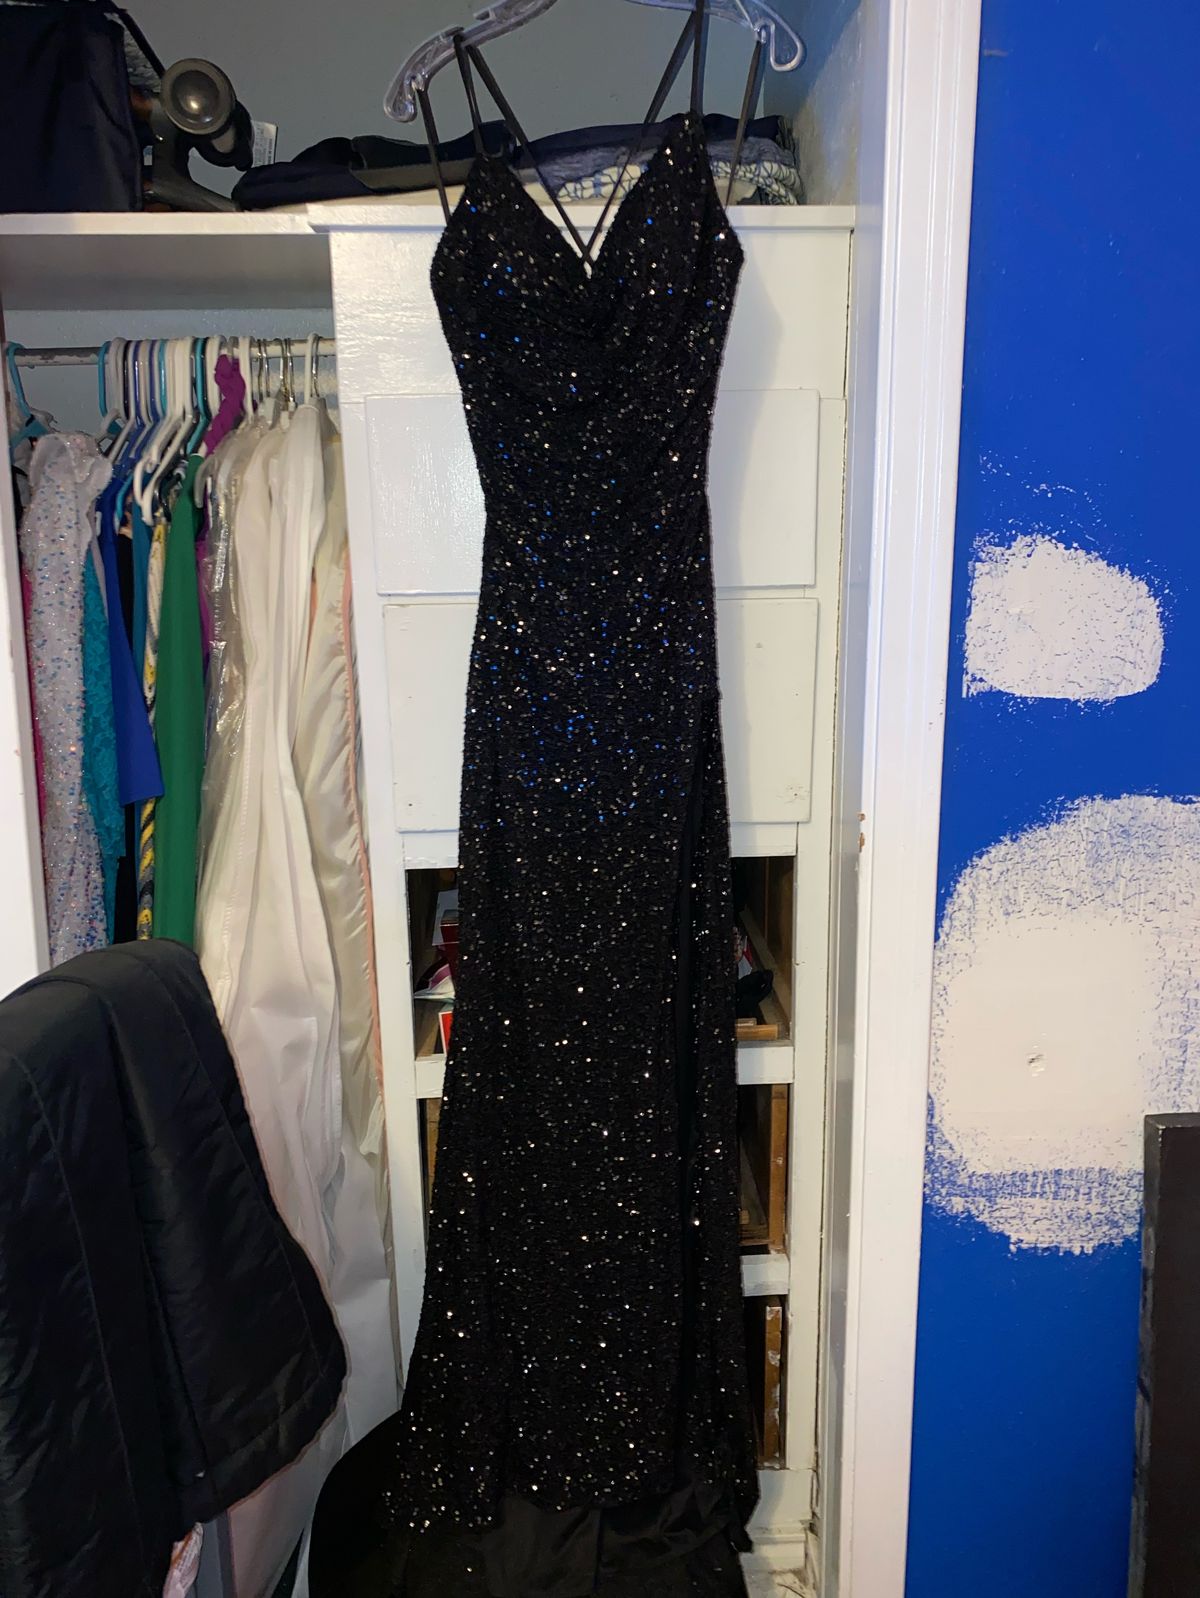 La Femme Size 10 Prom Plunge Black Side Slit Dress on Queenly